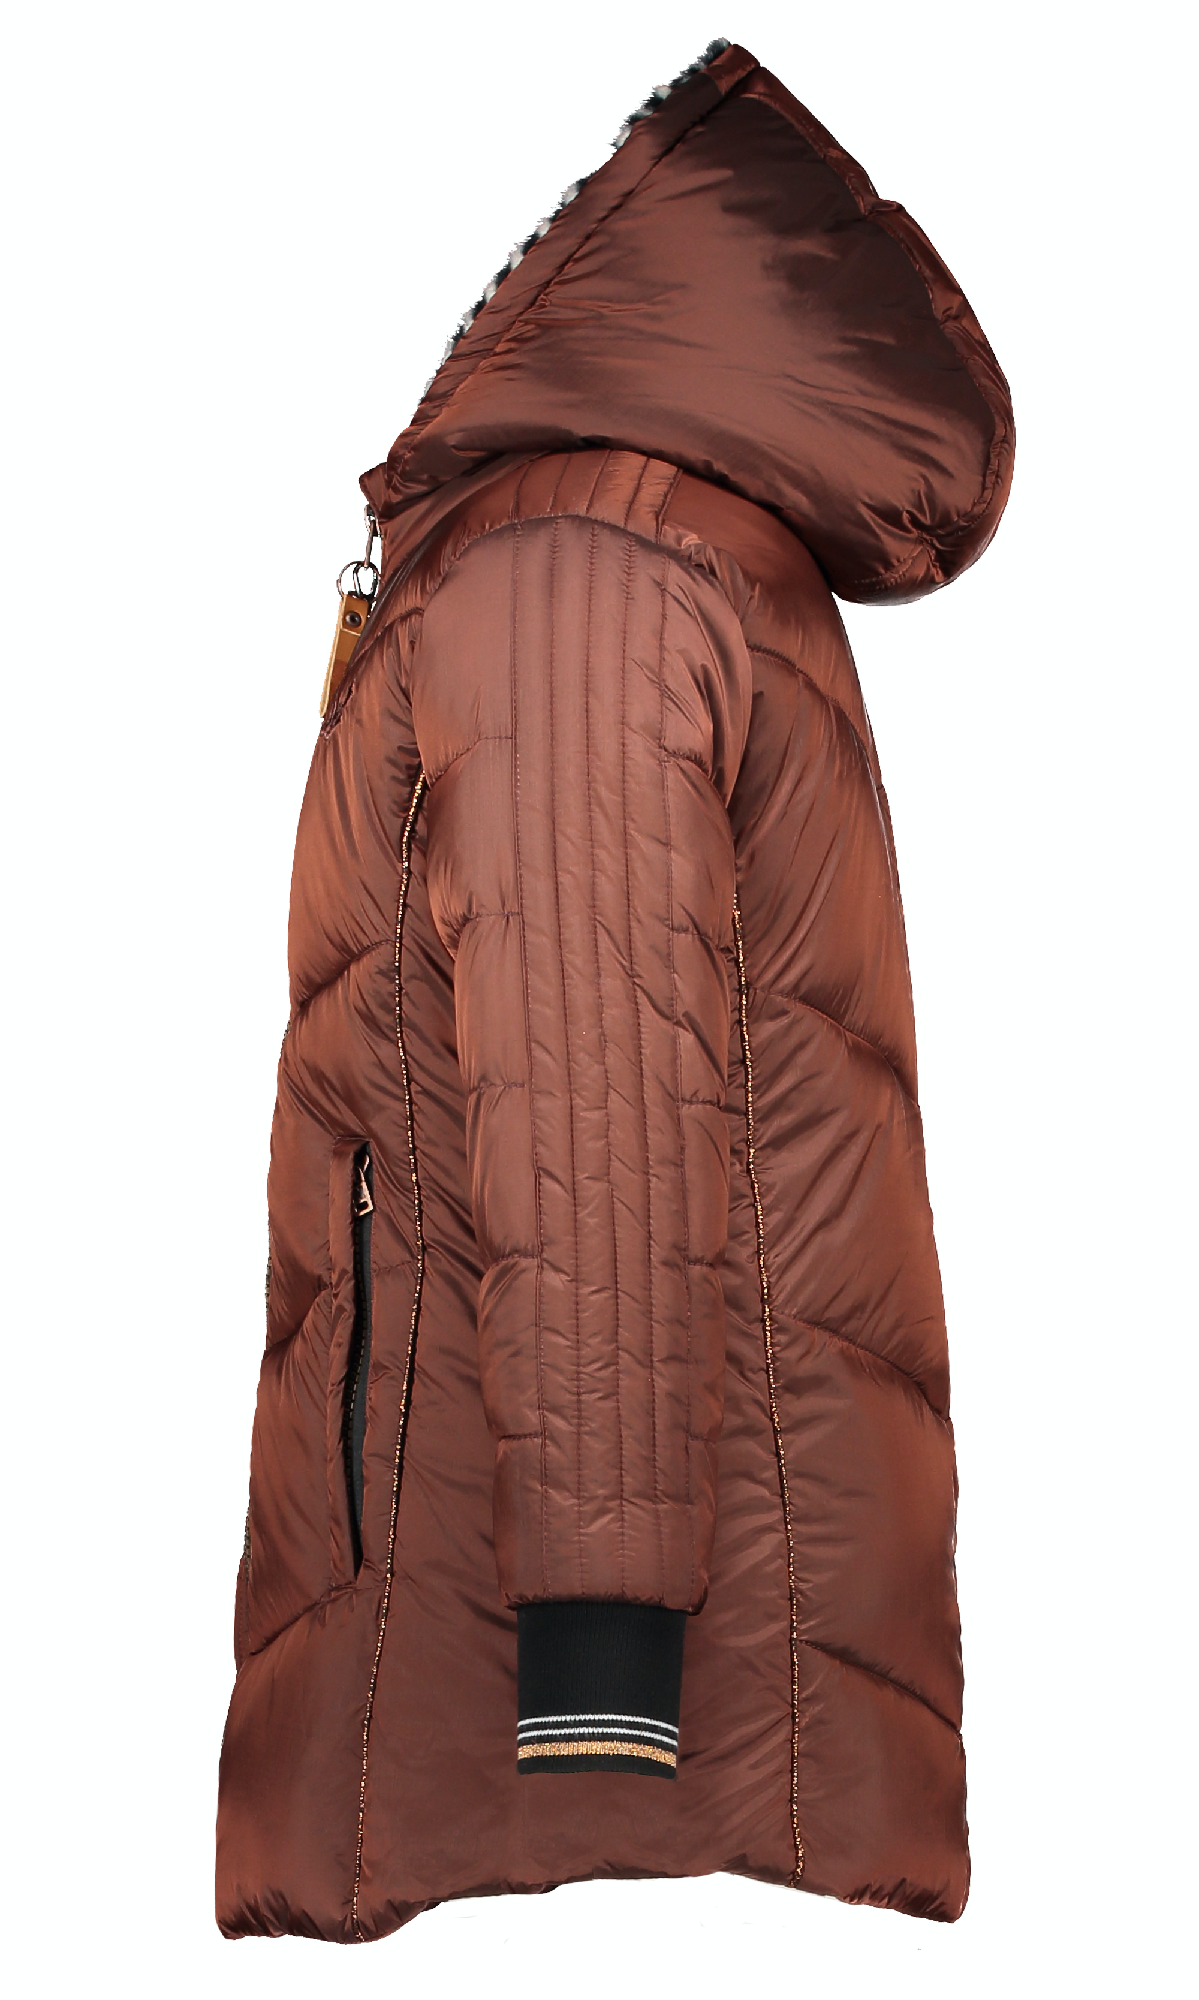 Meisjes Brooklynn Hooded long jacket van NoNo in de kleur Rood in maat 122/128.